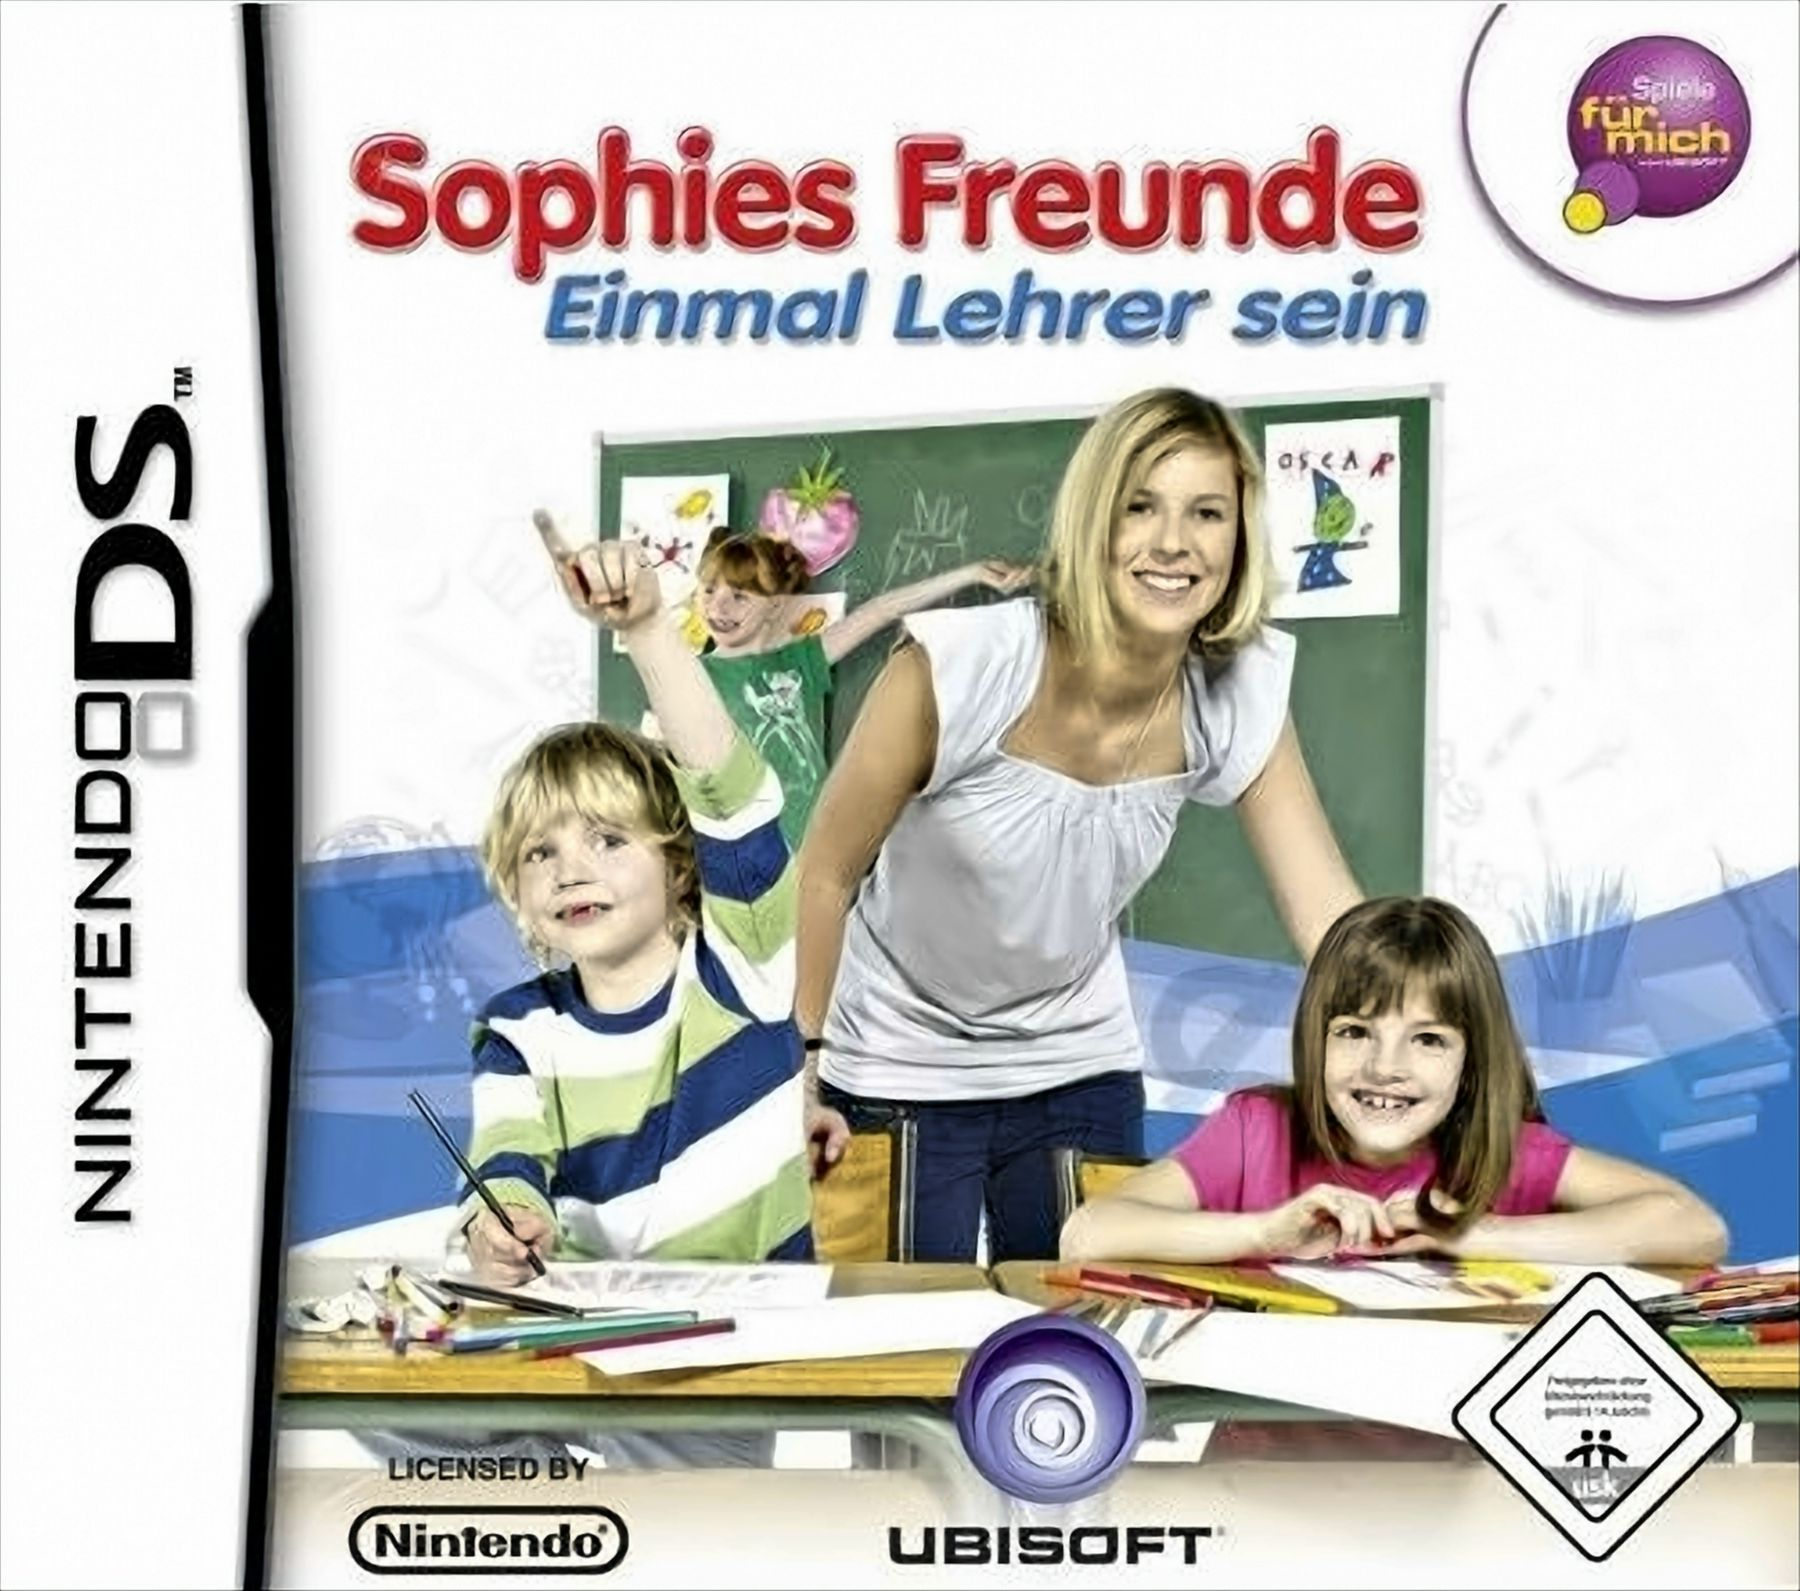 Einmal Freunde: - Lehrer Sophies sein [Nintendo DS]